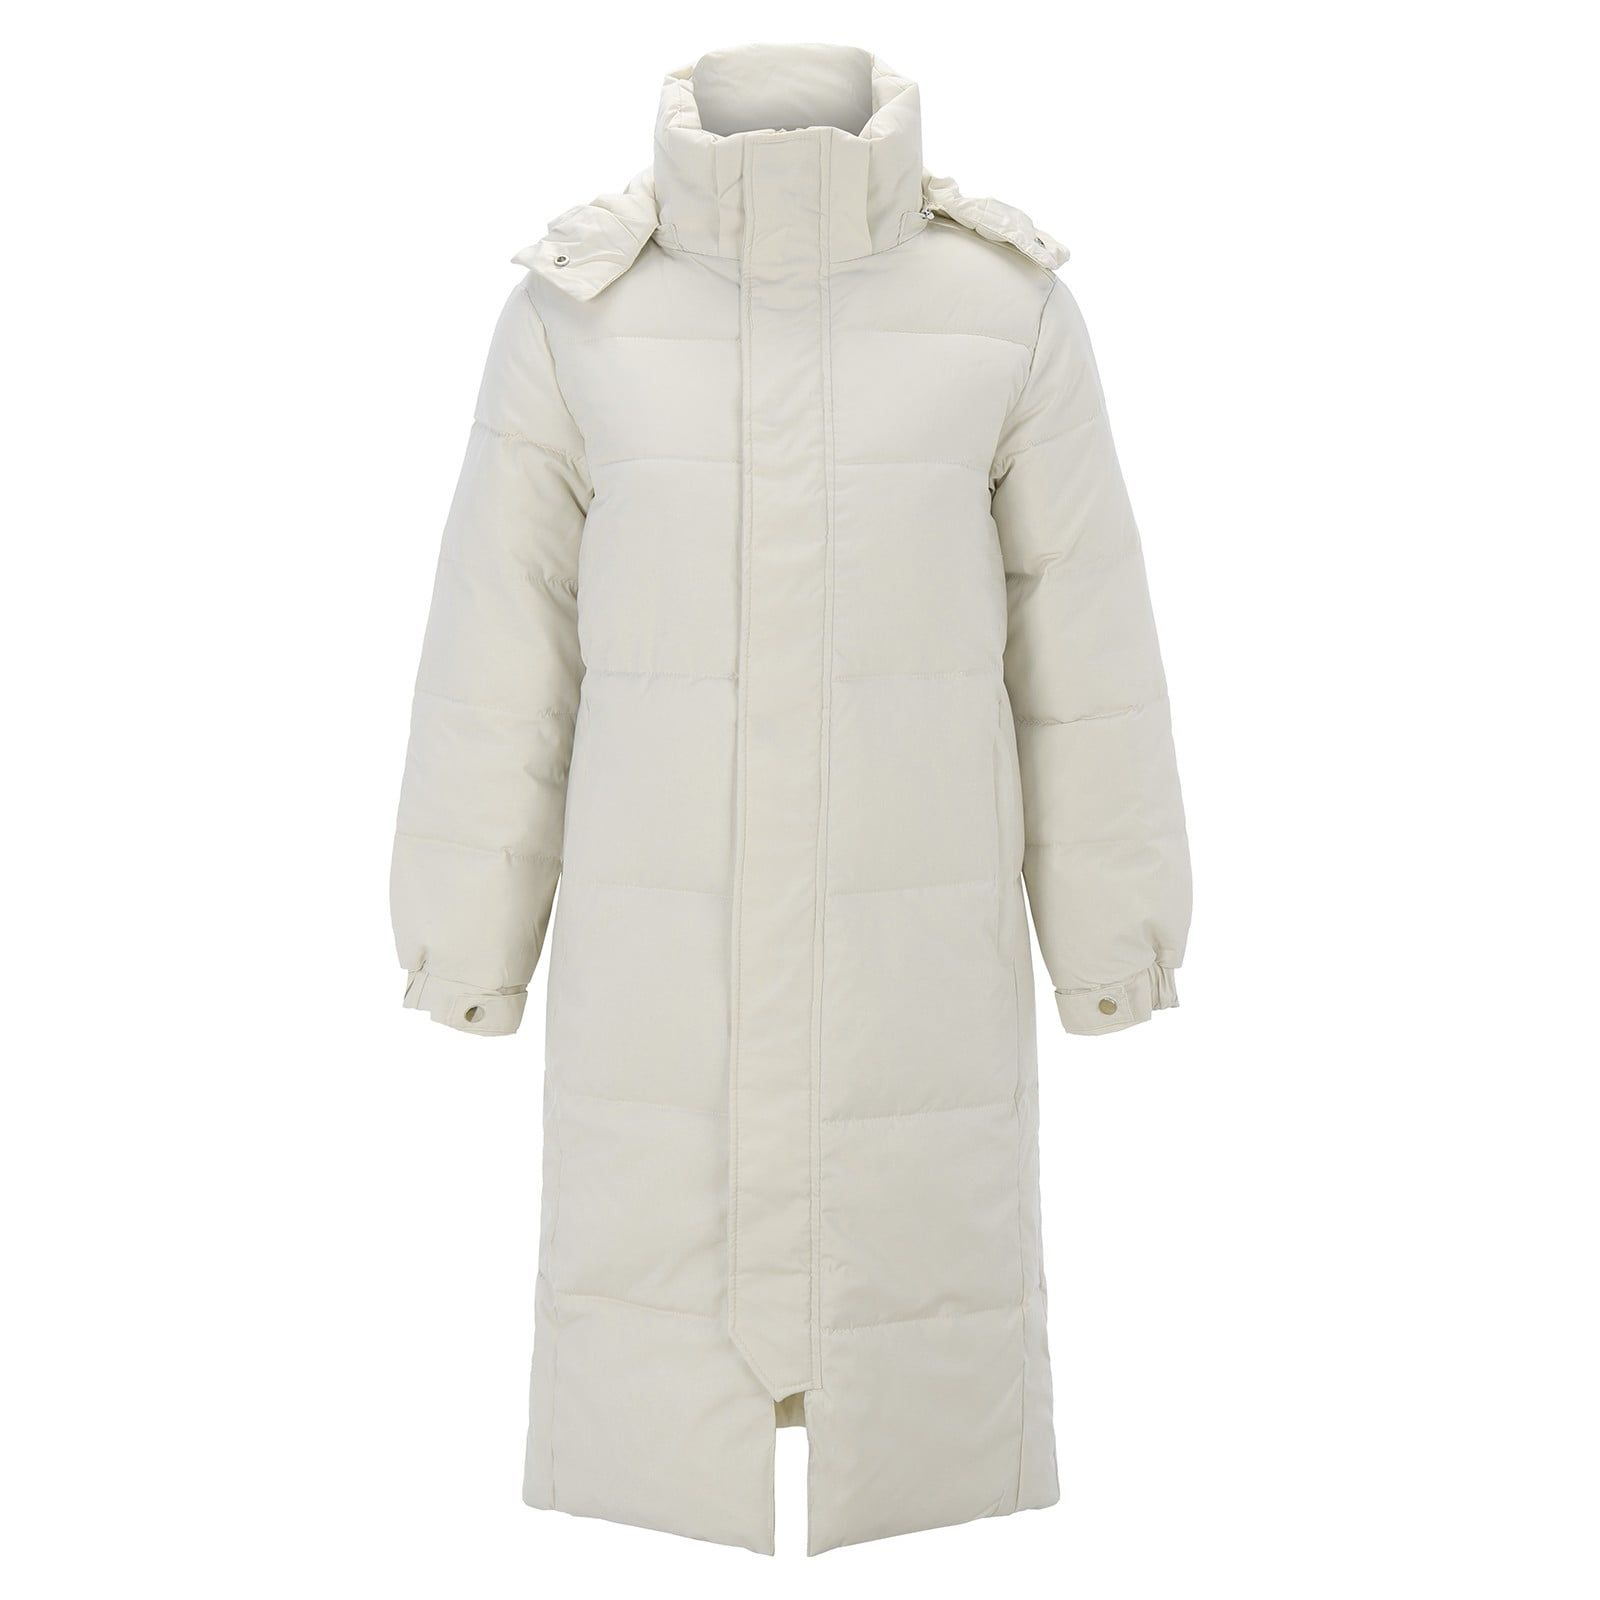 Entyinea Women's Winter Coats Winter Warm Sherpa Lined Jacket Heavy ...